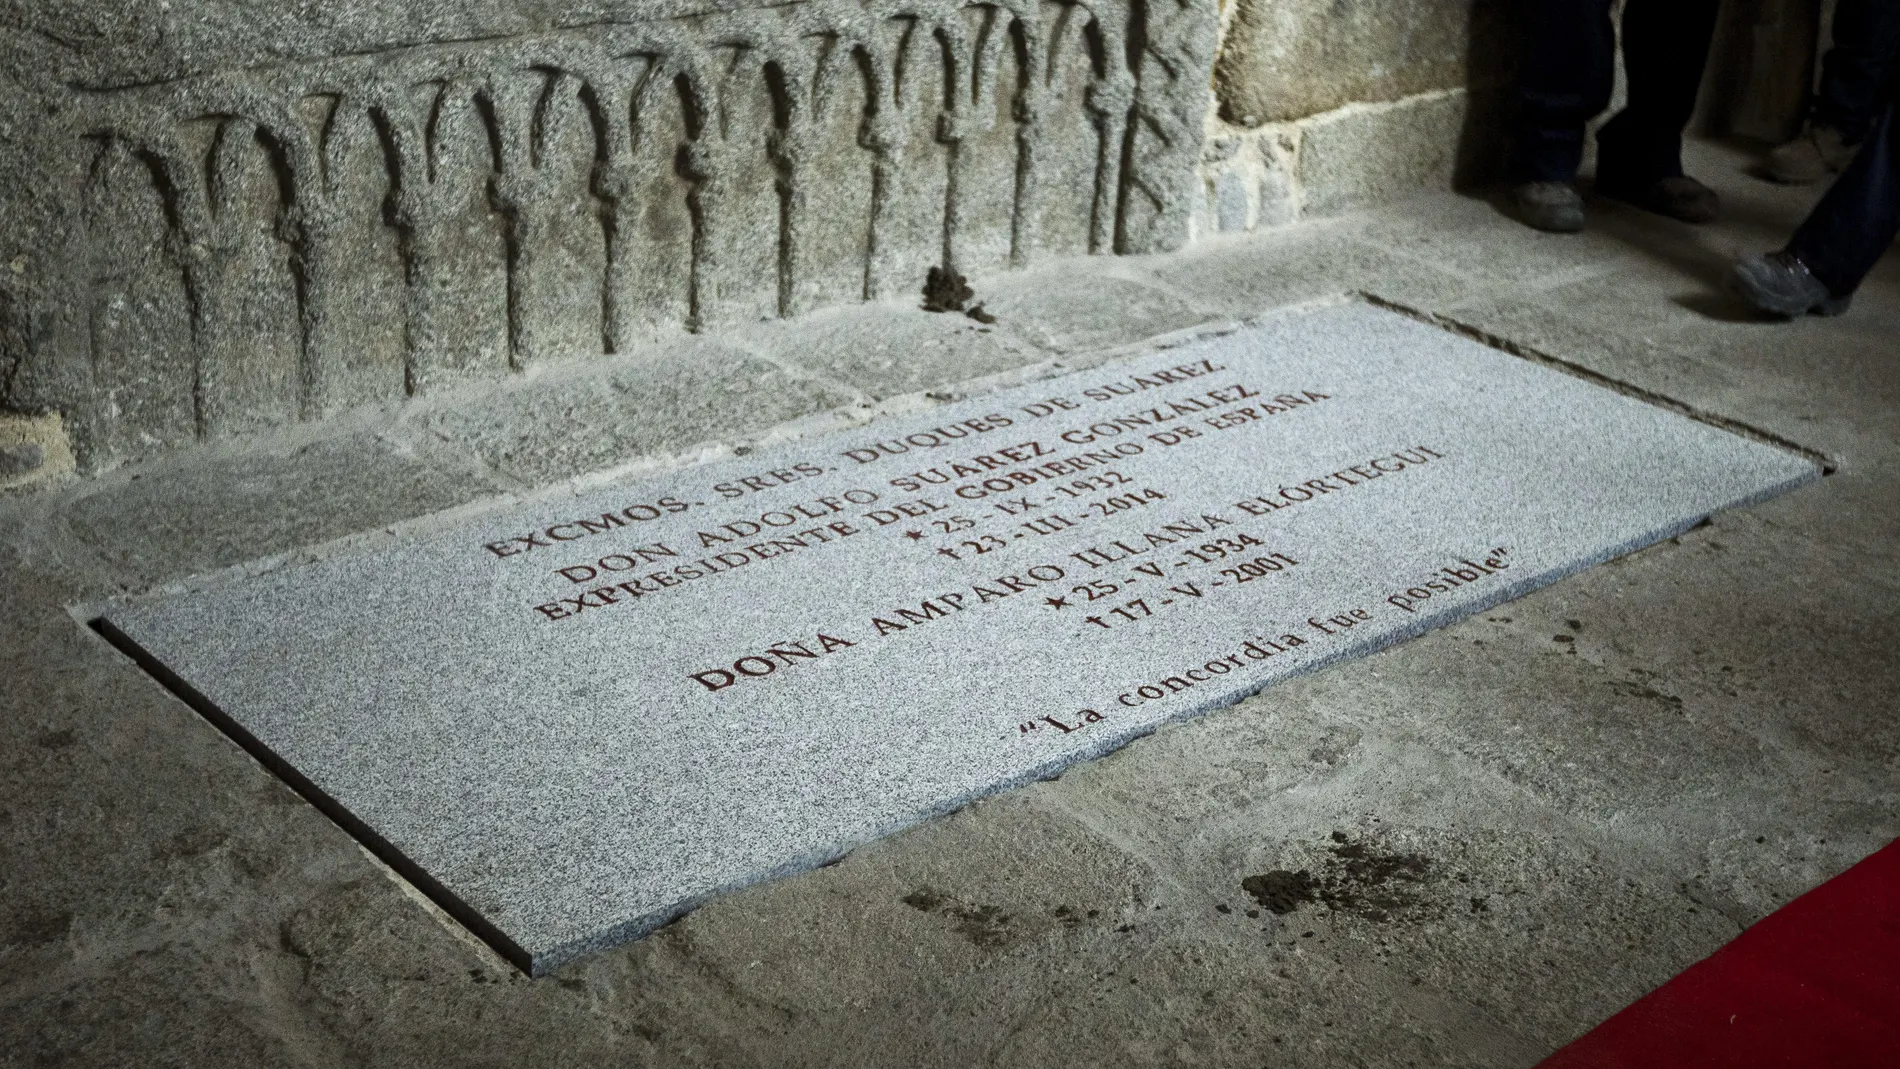 Tumba donde descansan los restos mortales de Adolfo Suárez junto a los de su esposa, Amparo Illana